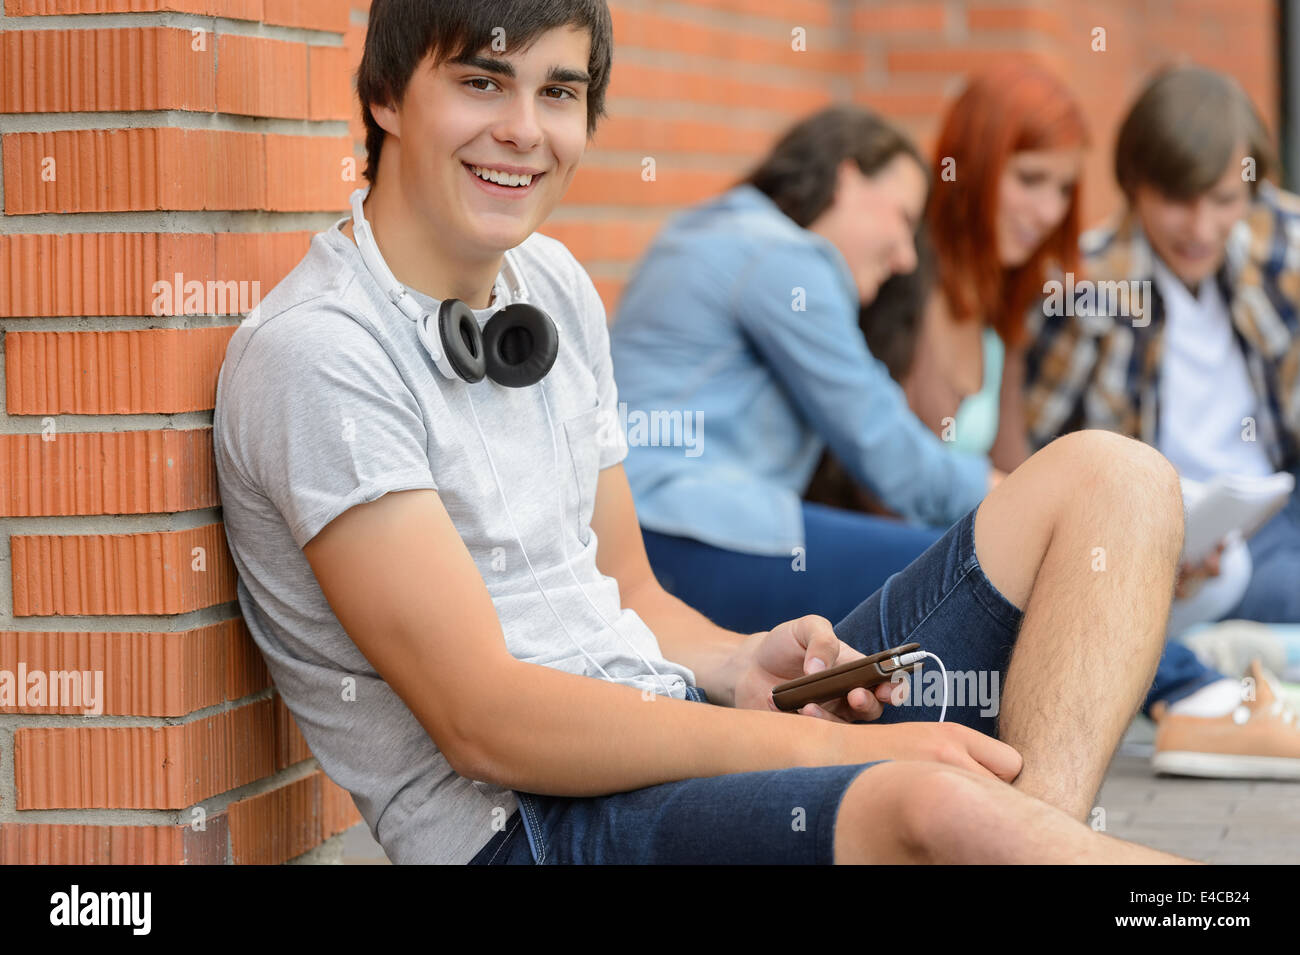 College student garçon assis sur le sol avec des amis Banque D'Images